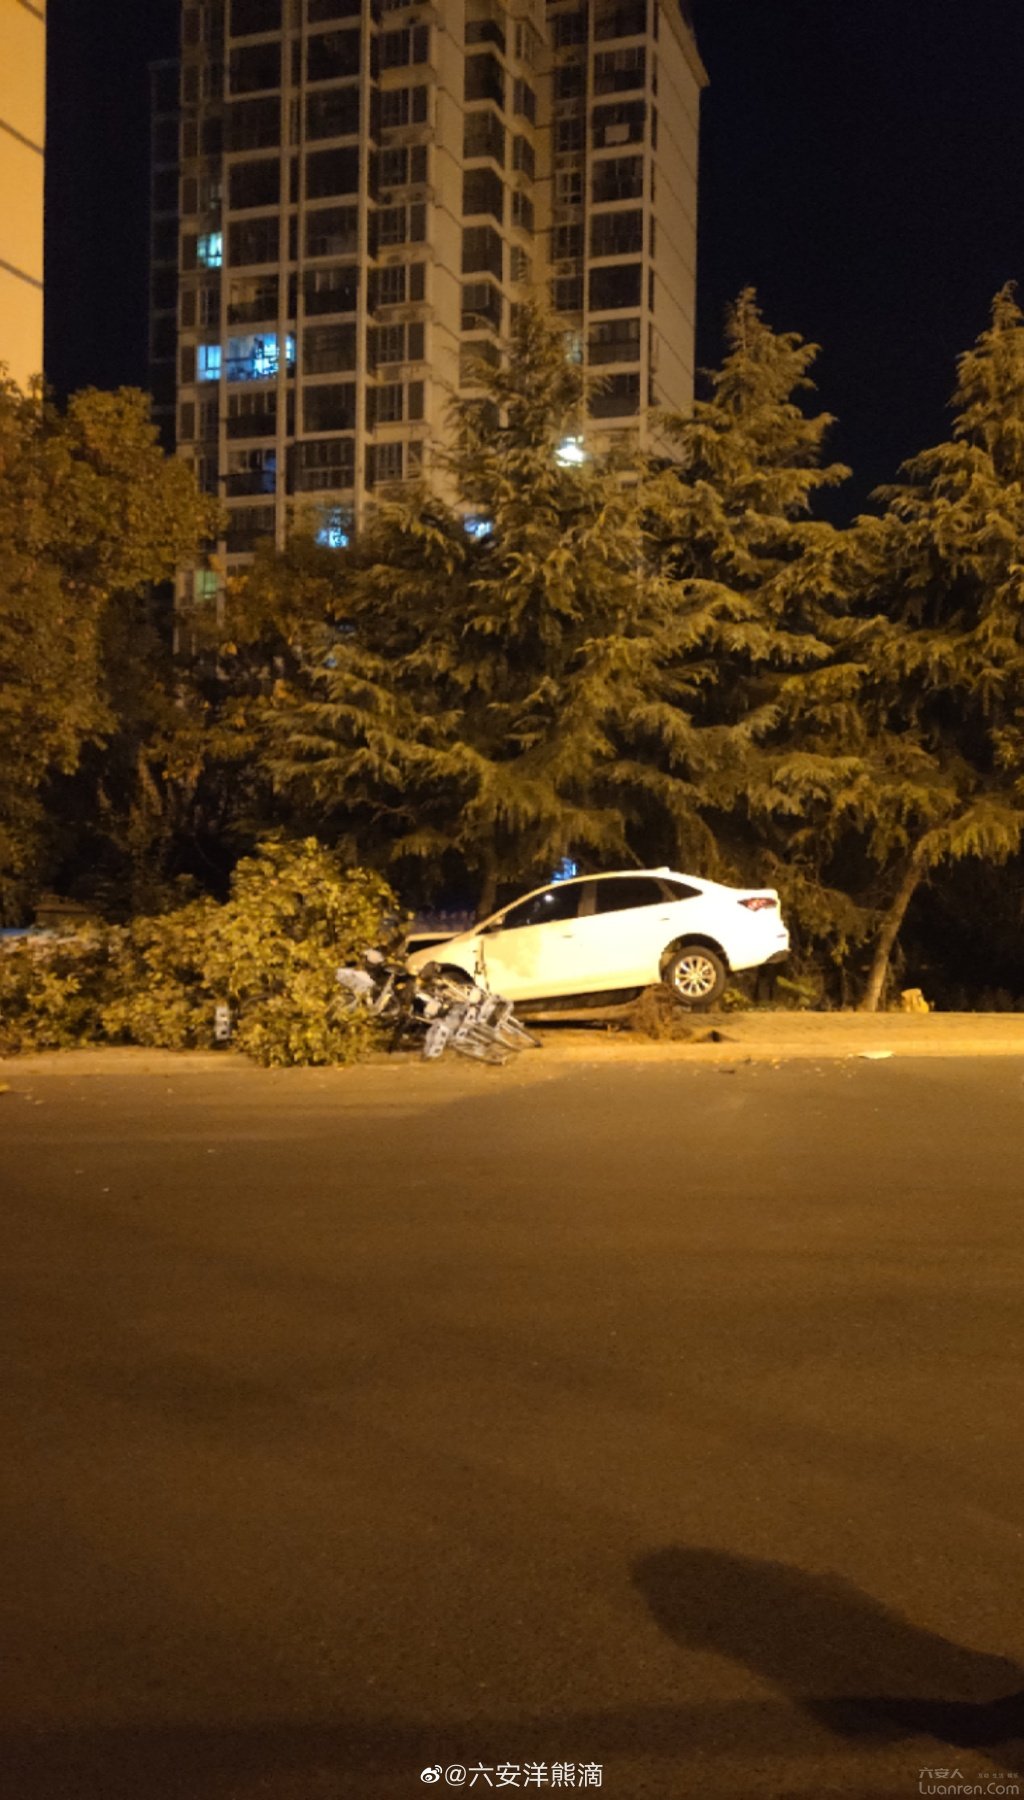 昨夜月亮岛环岛路又出交通事故了!行道树被连根撞断!驾驶员涉嫌酒驾?